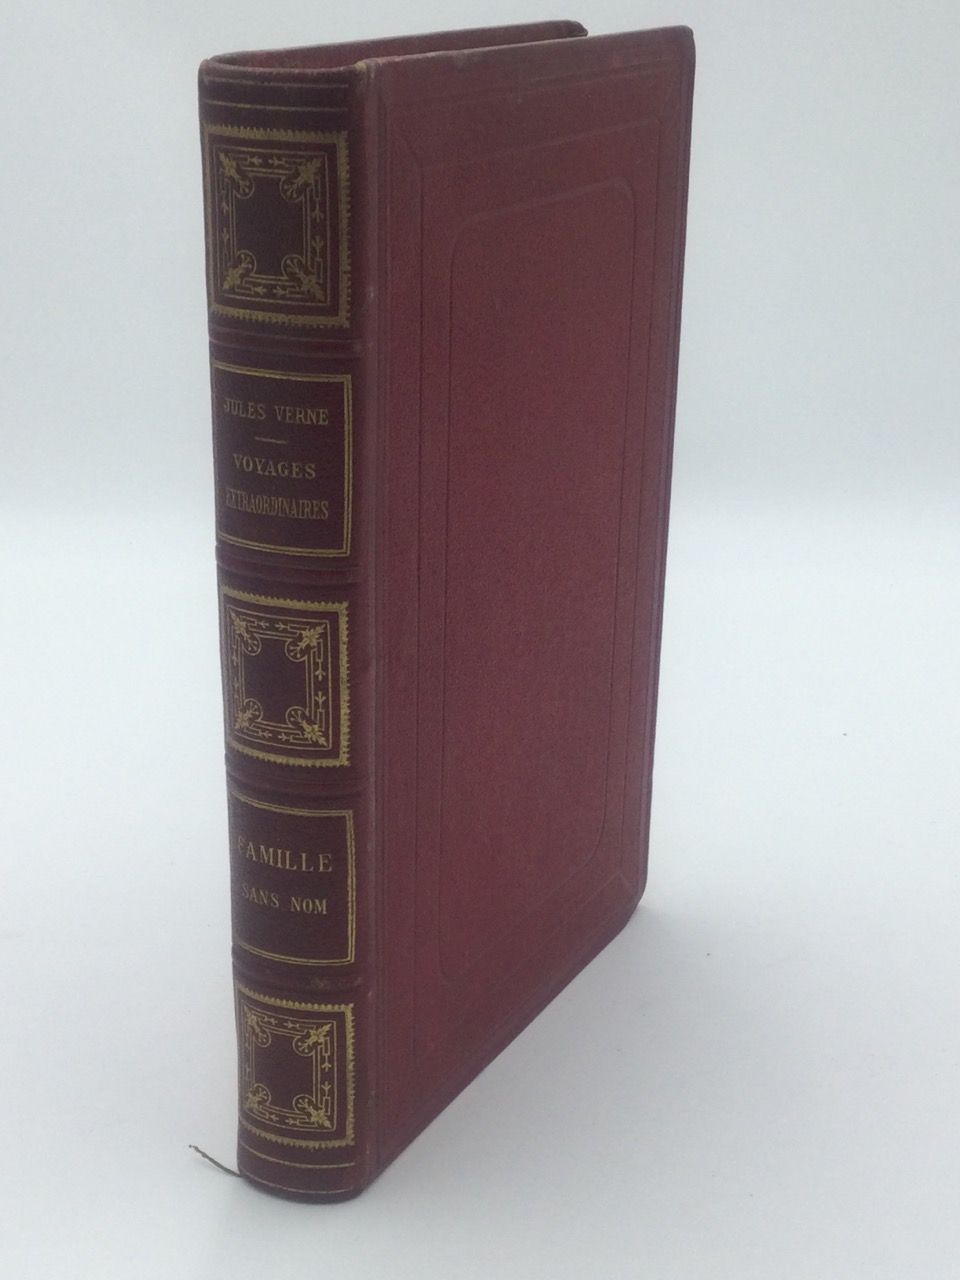 Null 儒勒-韦尔纳，《无名家庭》，1卷8开本，半皮装订，书脊有标题和镀金边，Ed HETZEL，巴黎，约1900年（边角略微发暗）。